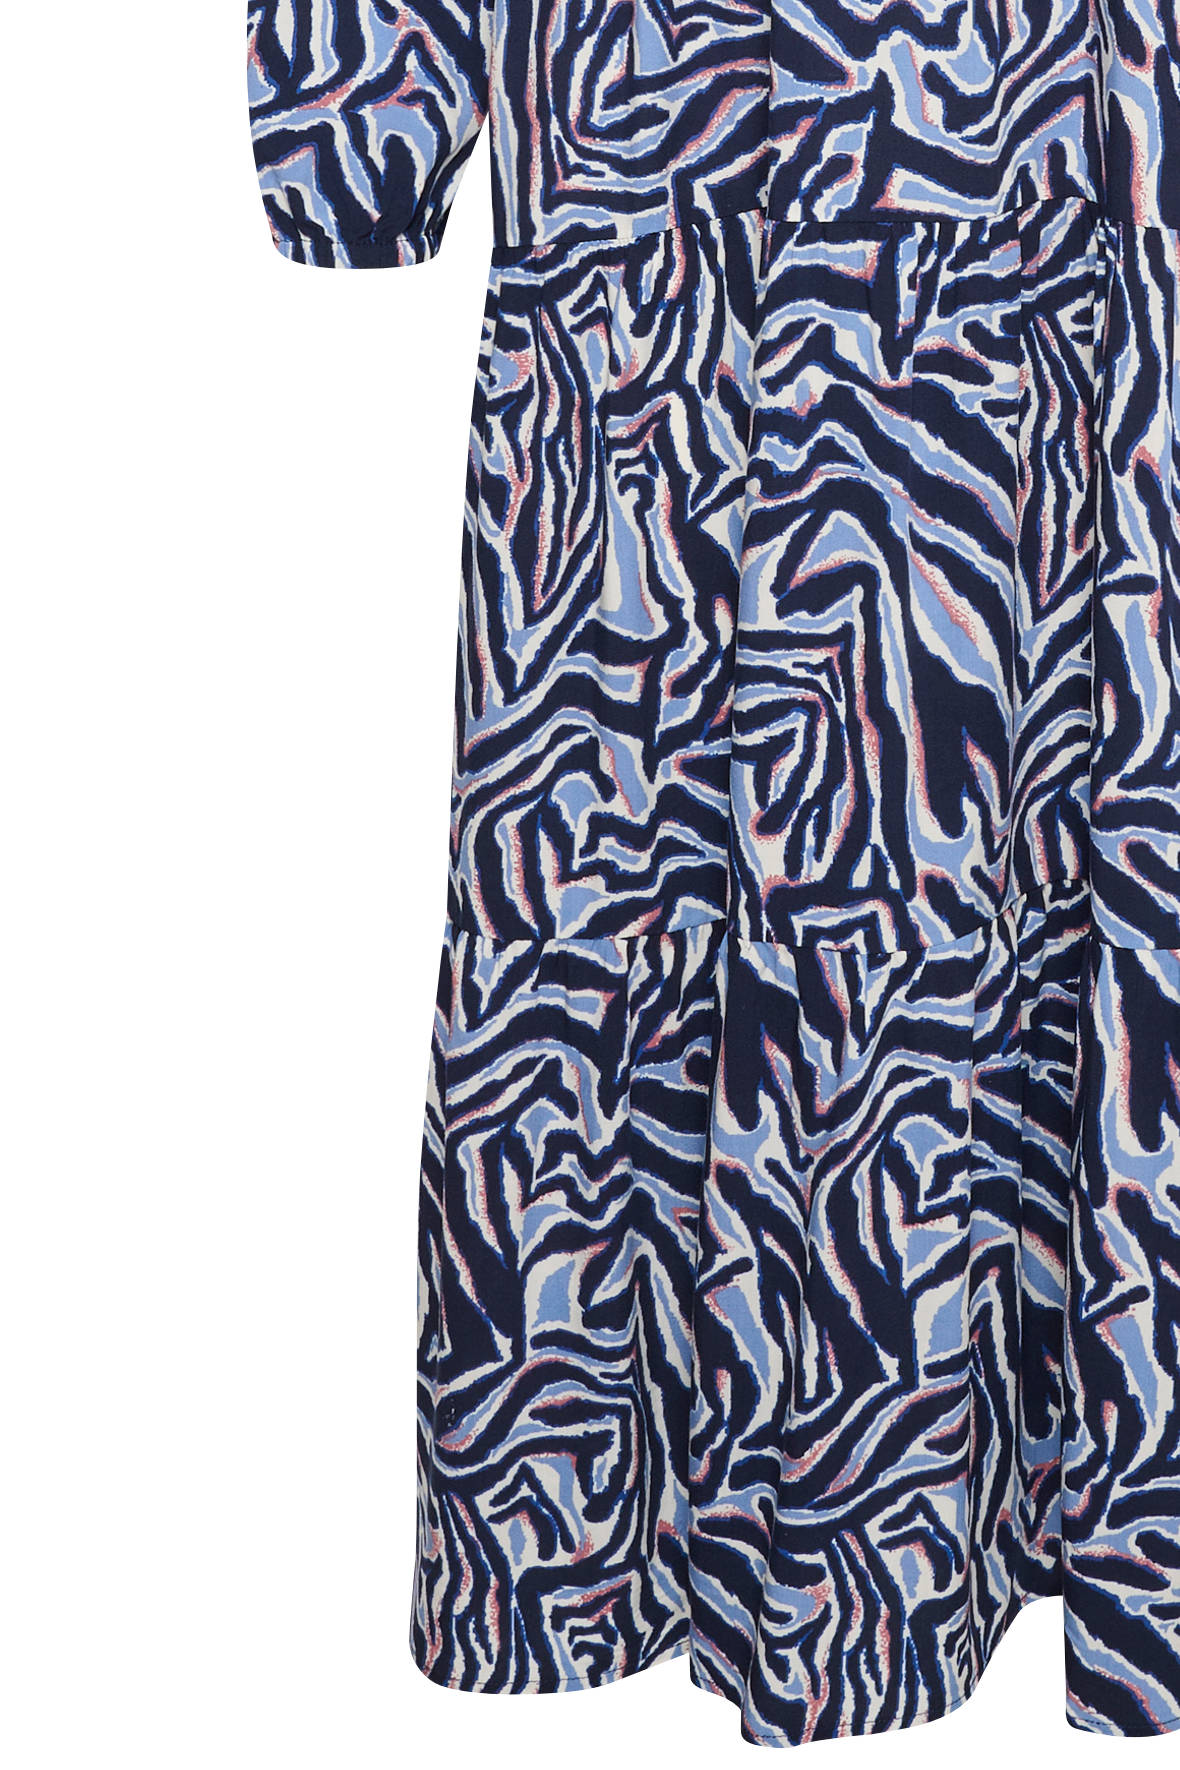 Saint Tropez print blåmønstret - EdaSZ Hos med flot Lohse kjole maxi